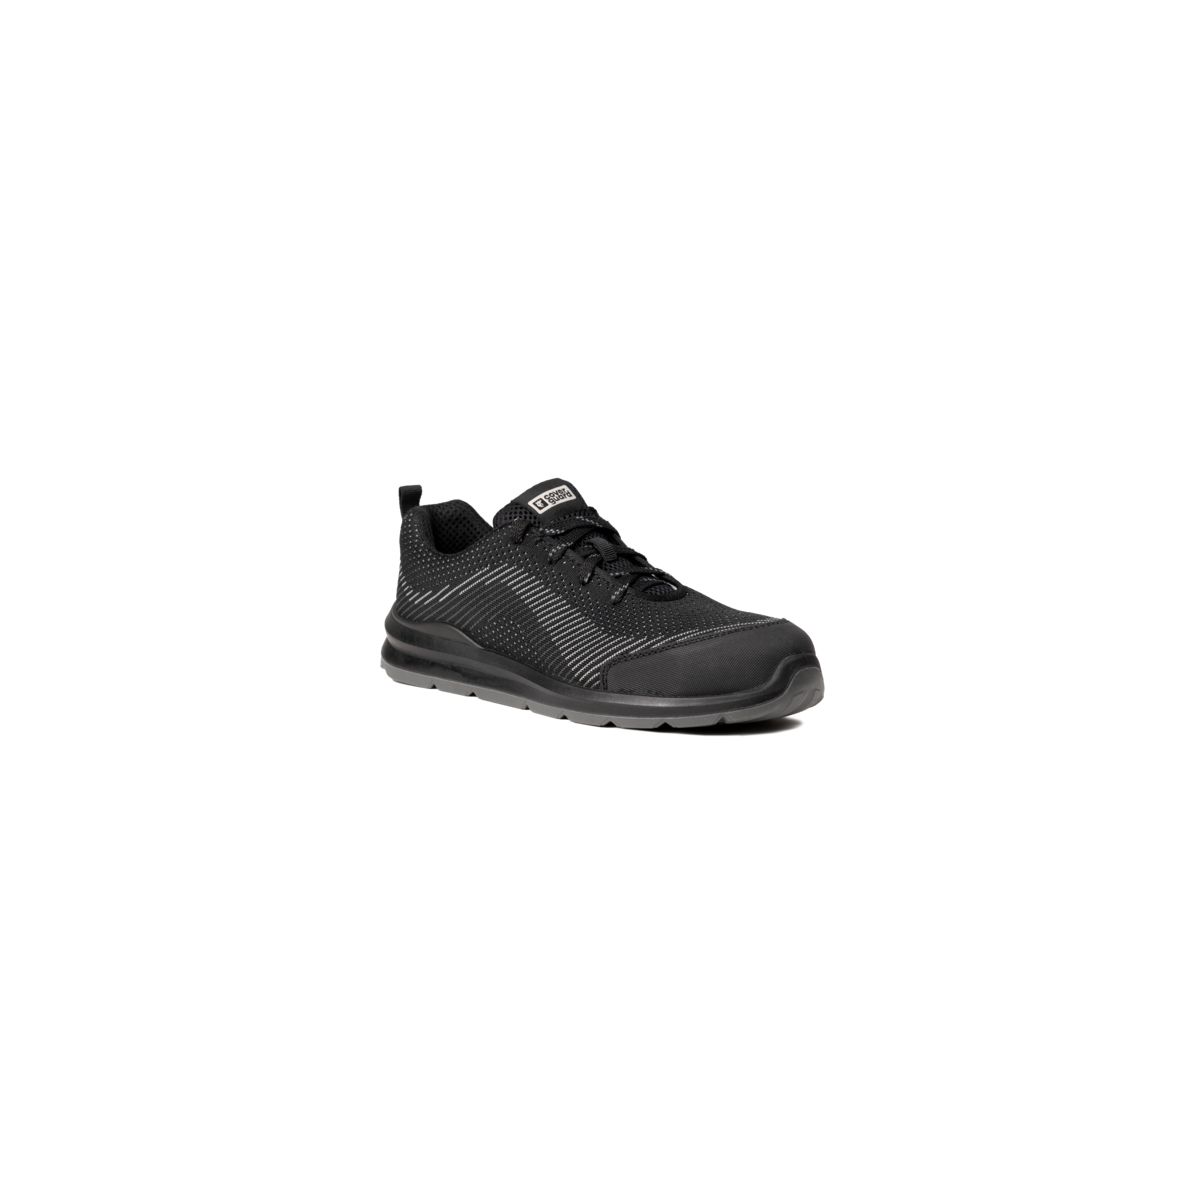 Chaussures de sécurité MILERITE S1P Basse Noir/Gris - COVERGUARD - Taille 45 0